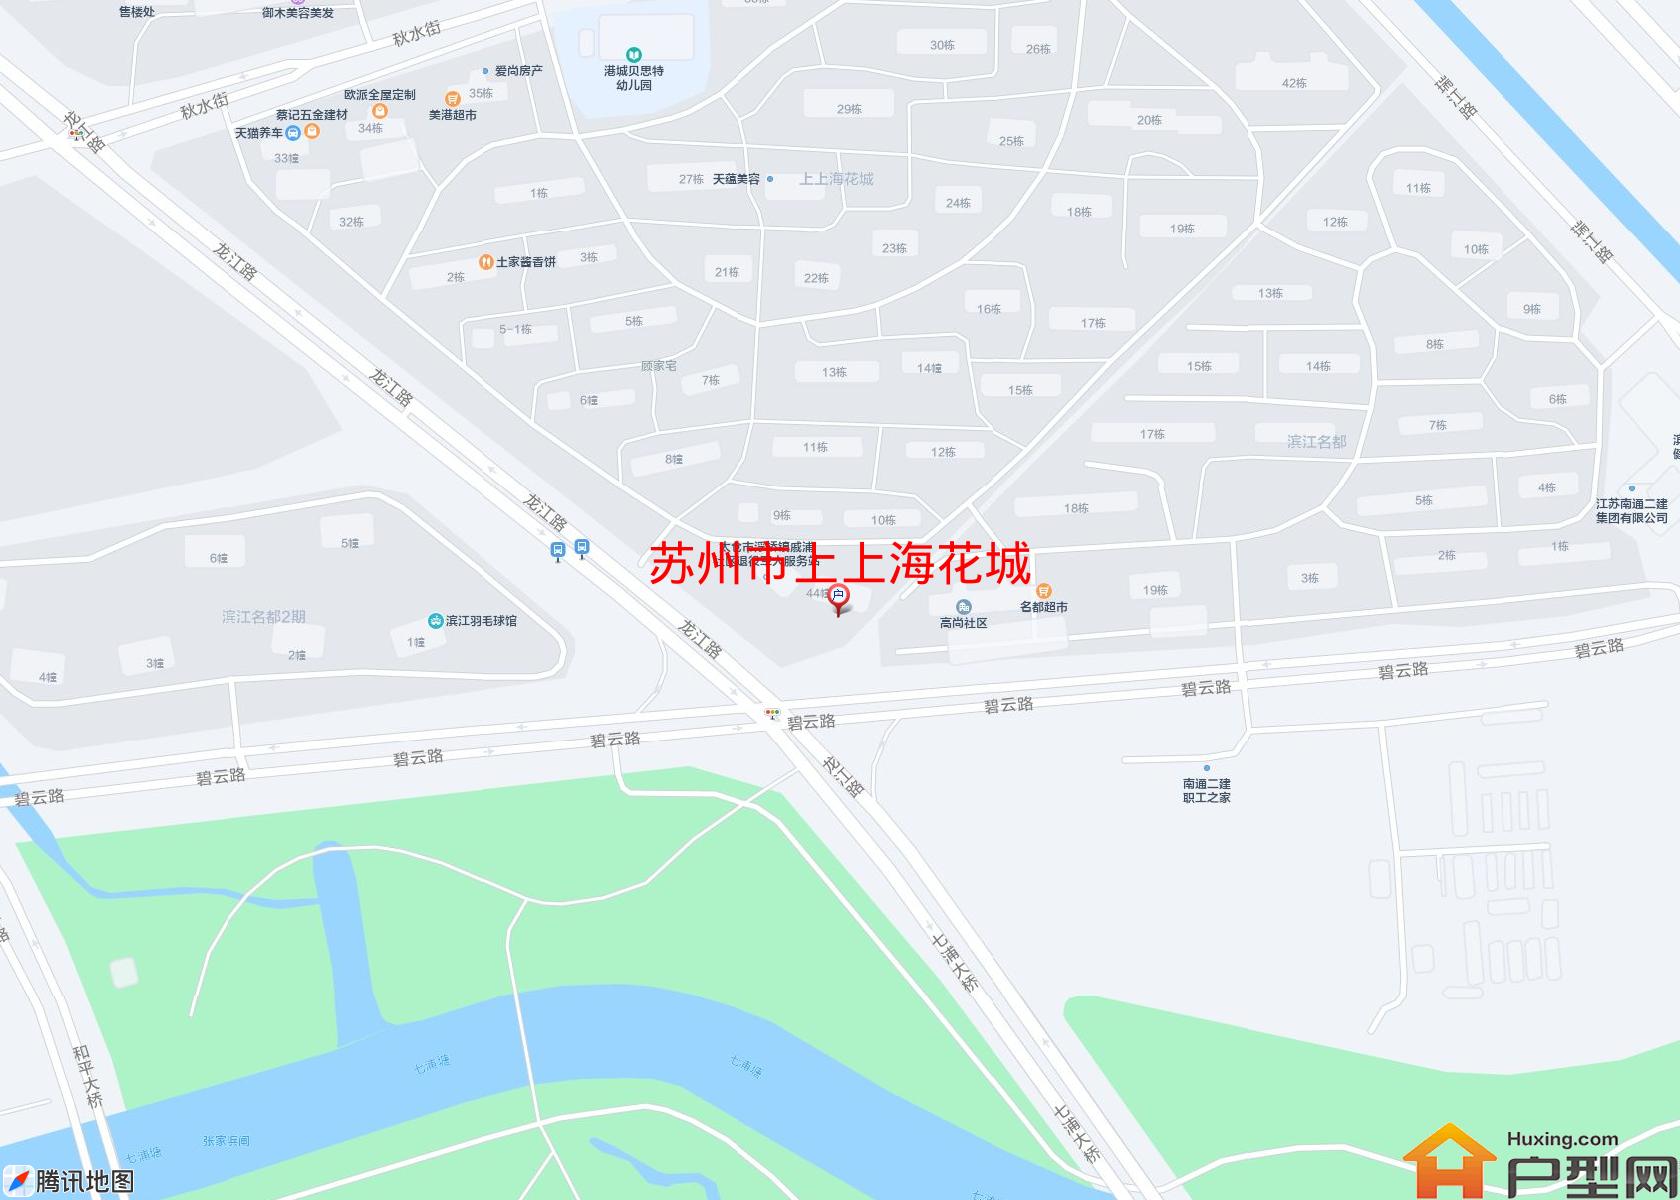 上上海花城小区 - 户型网